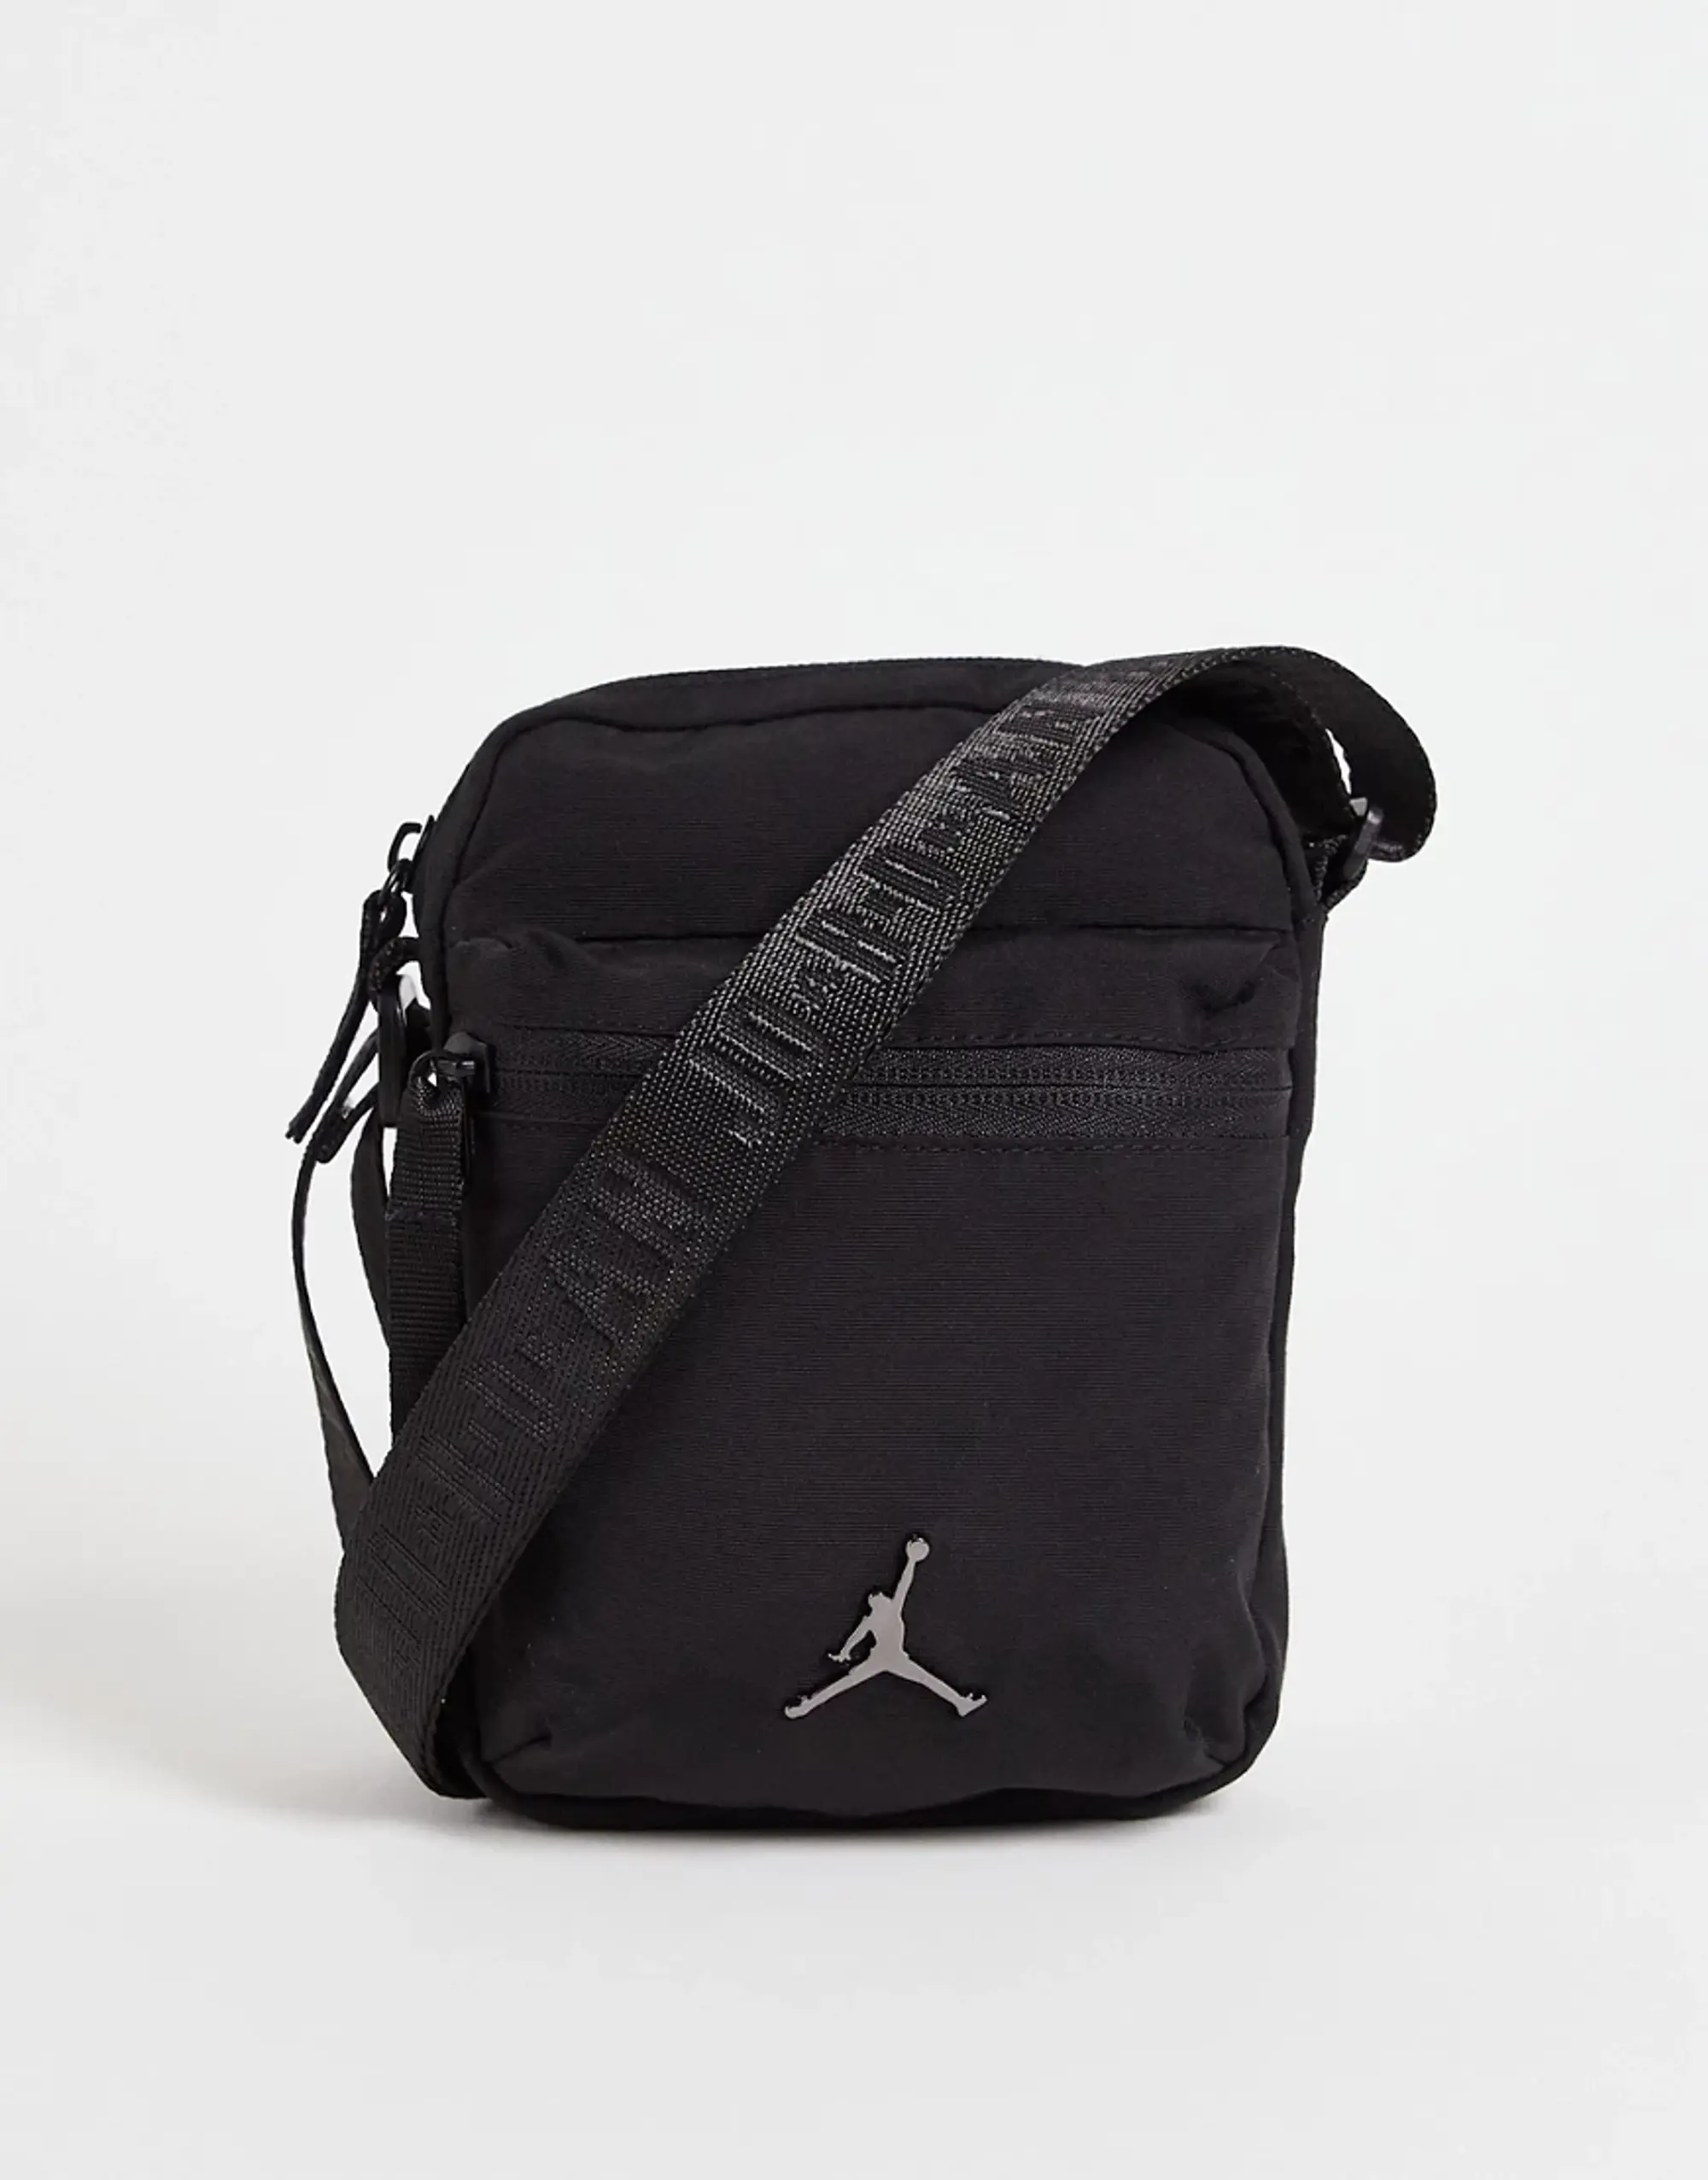 Nike Jordan Jordan Airborne Festival Bag Men Small Bags Black